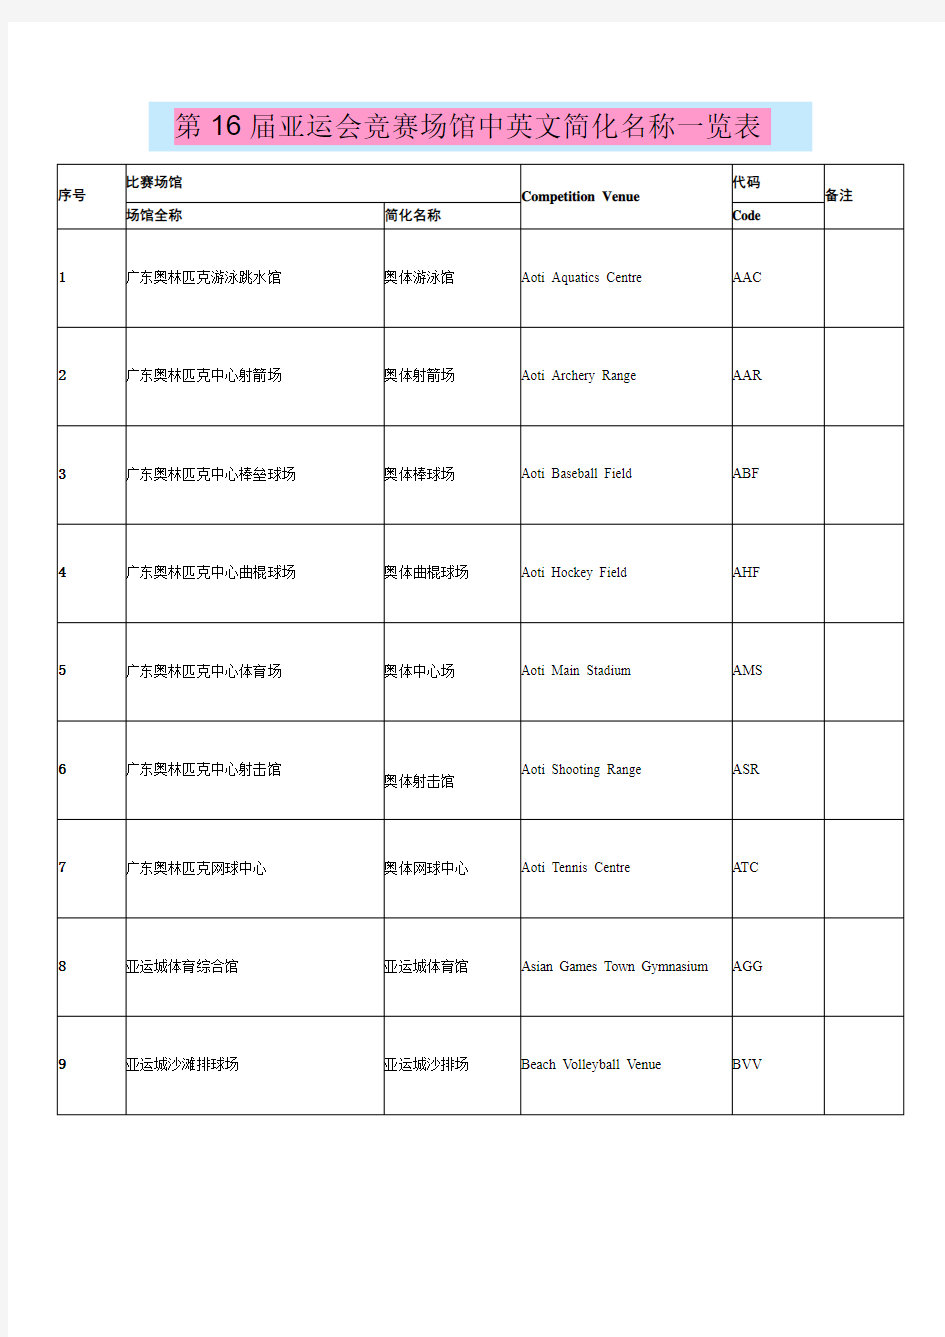 第16届广州亚运会竞赛场馆中英文简化名称一览表